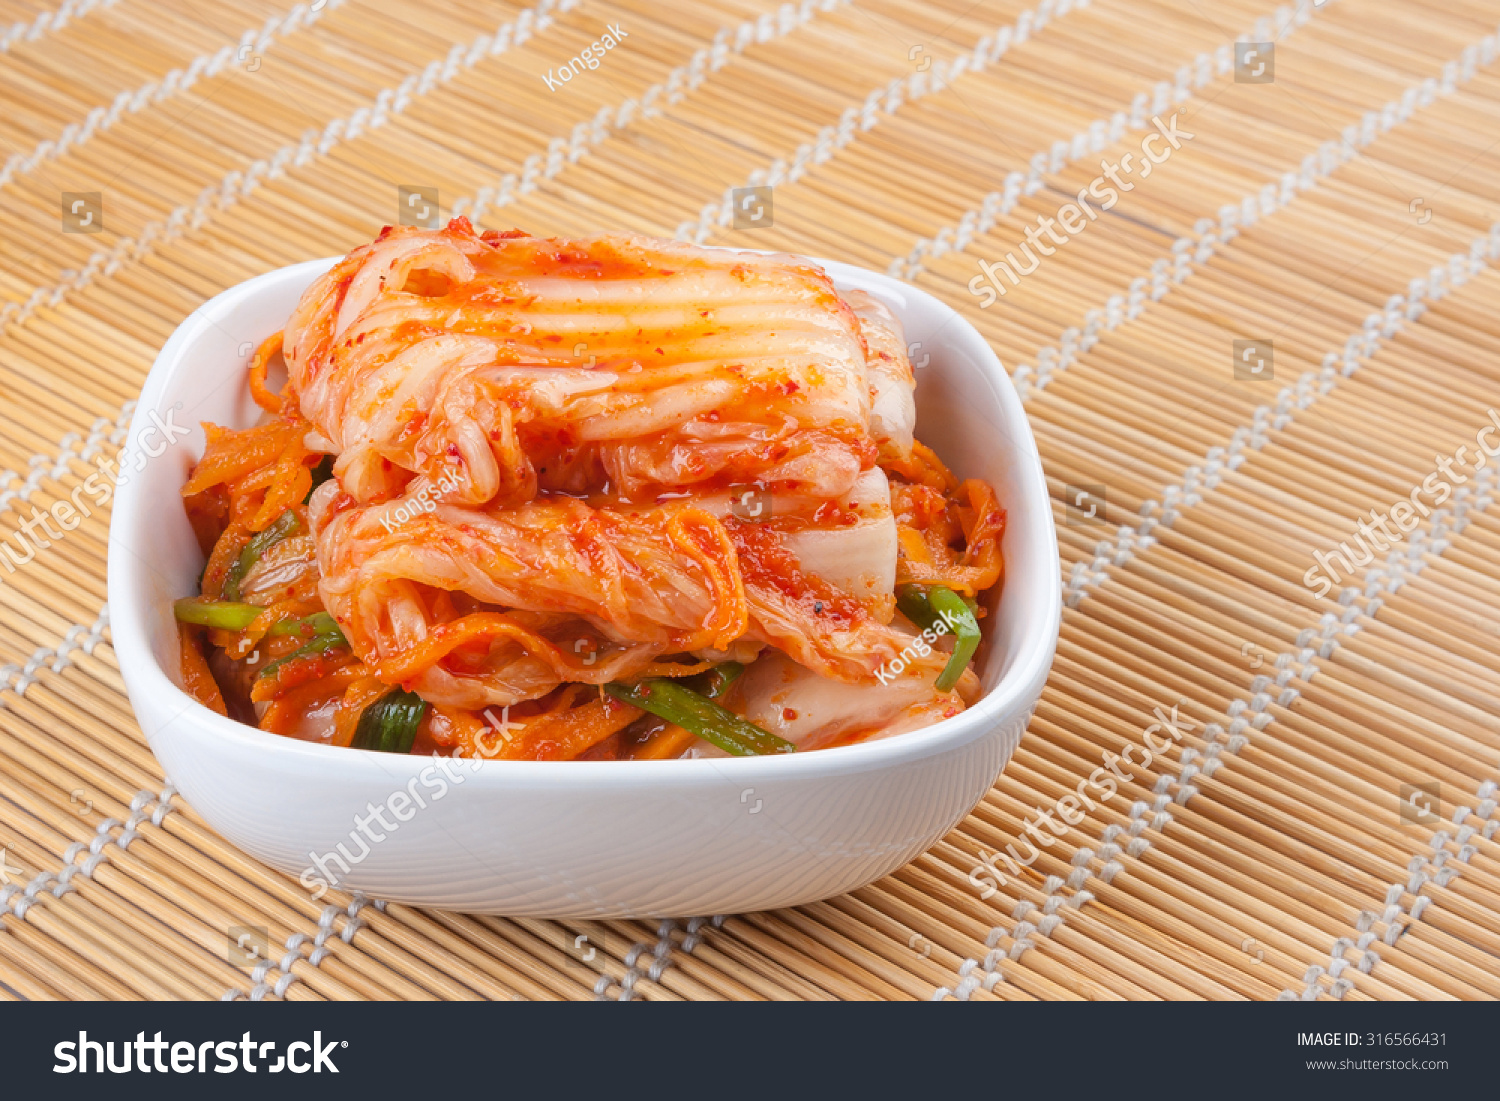 Kimchi , Korean Food Stock Photo 316566431 : Shutterstock